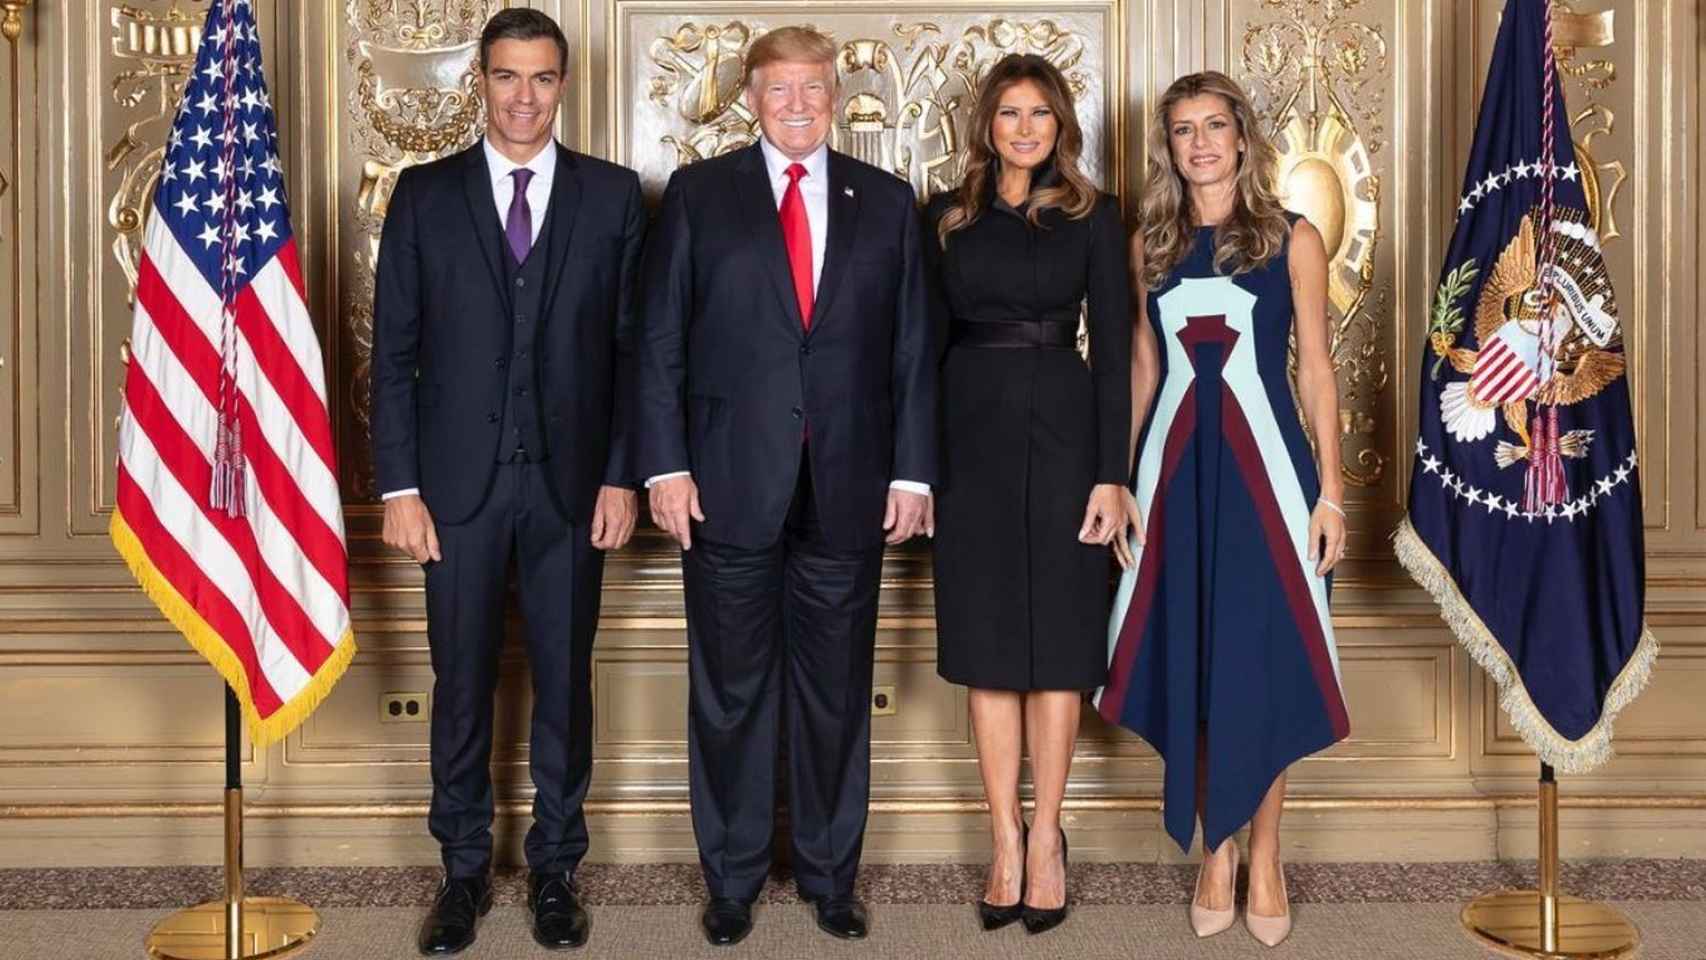 Pedro Sánchez, Donald Trump, Melania Trump y Begoña Gómez.